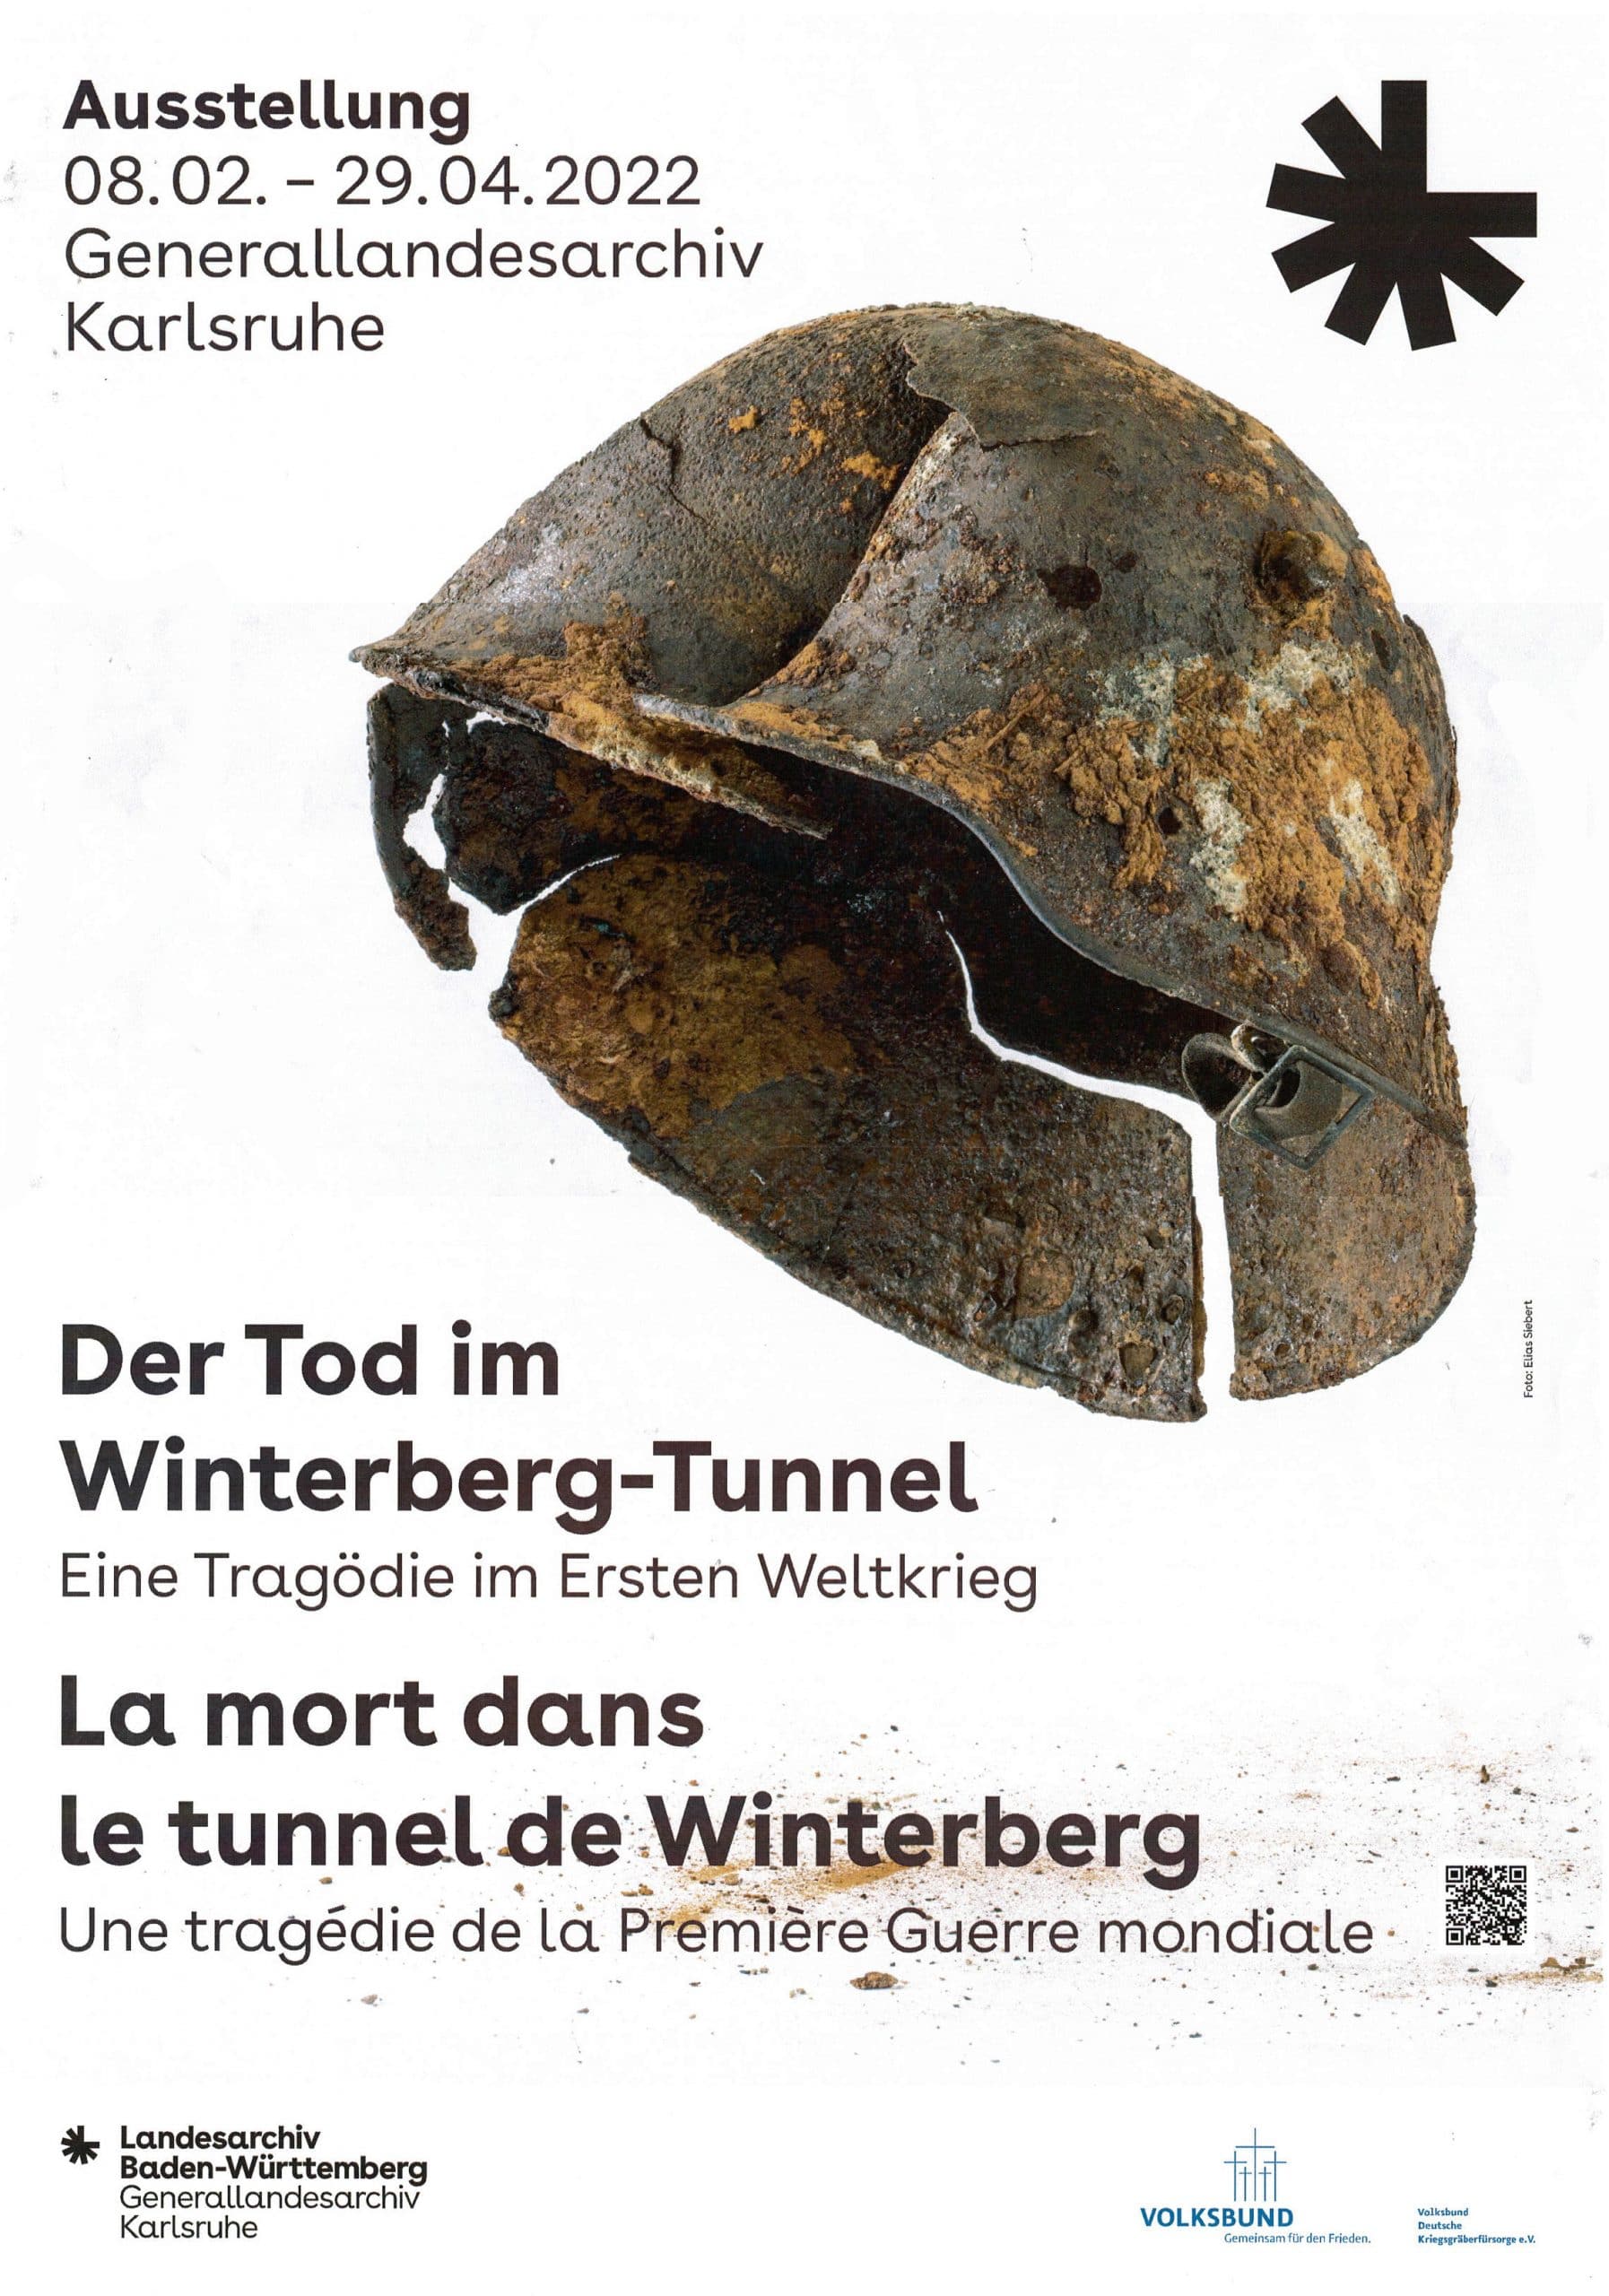 Le Tunnel de Winterberg